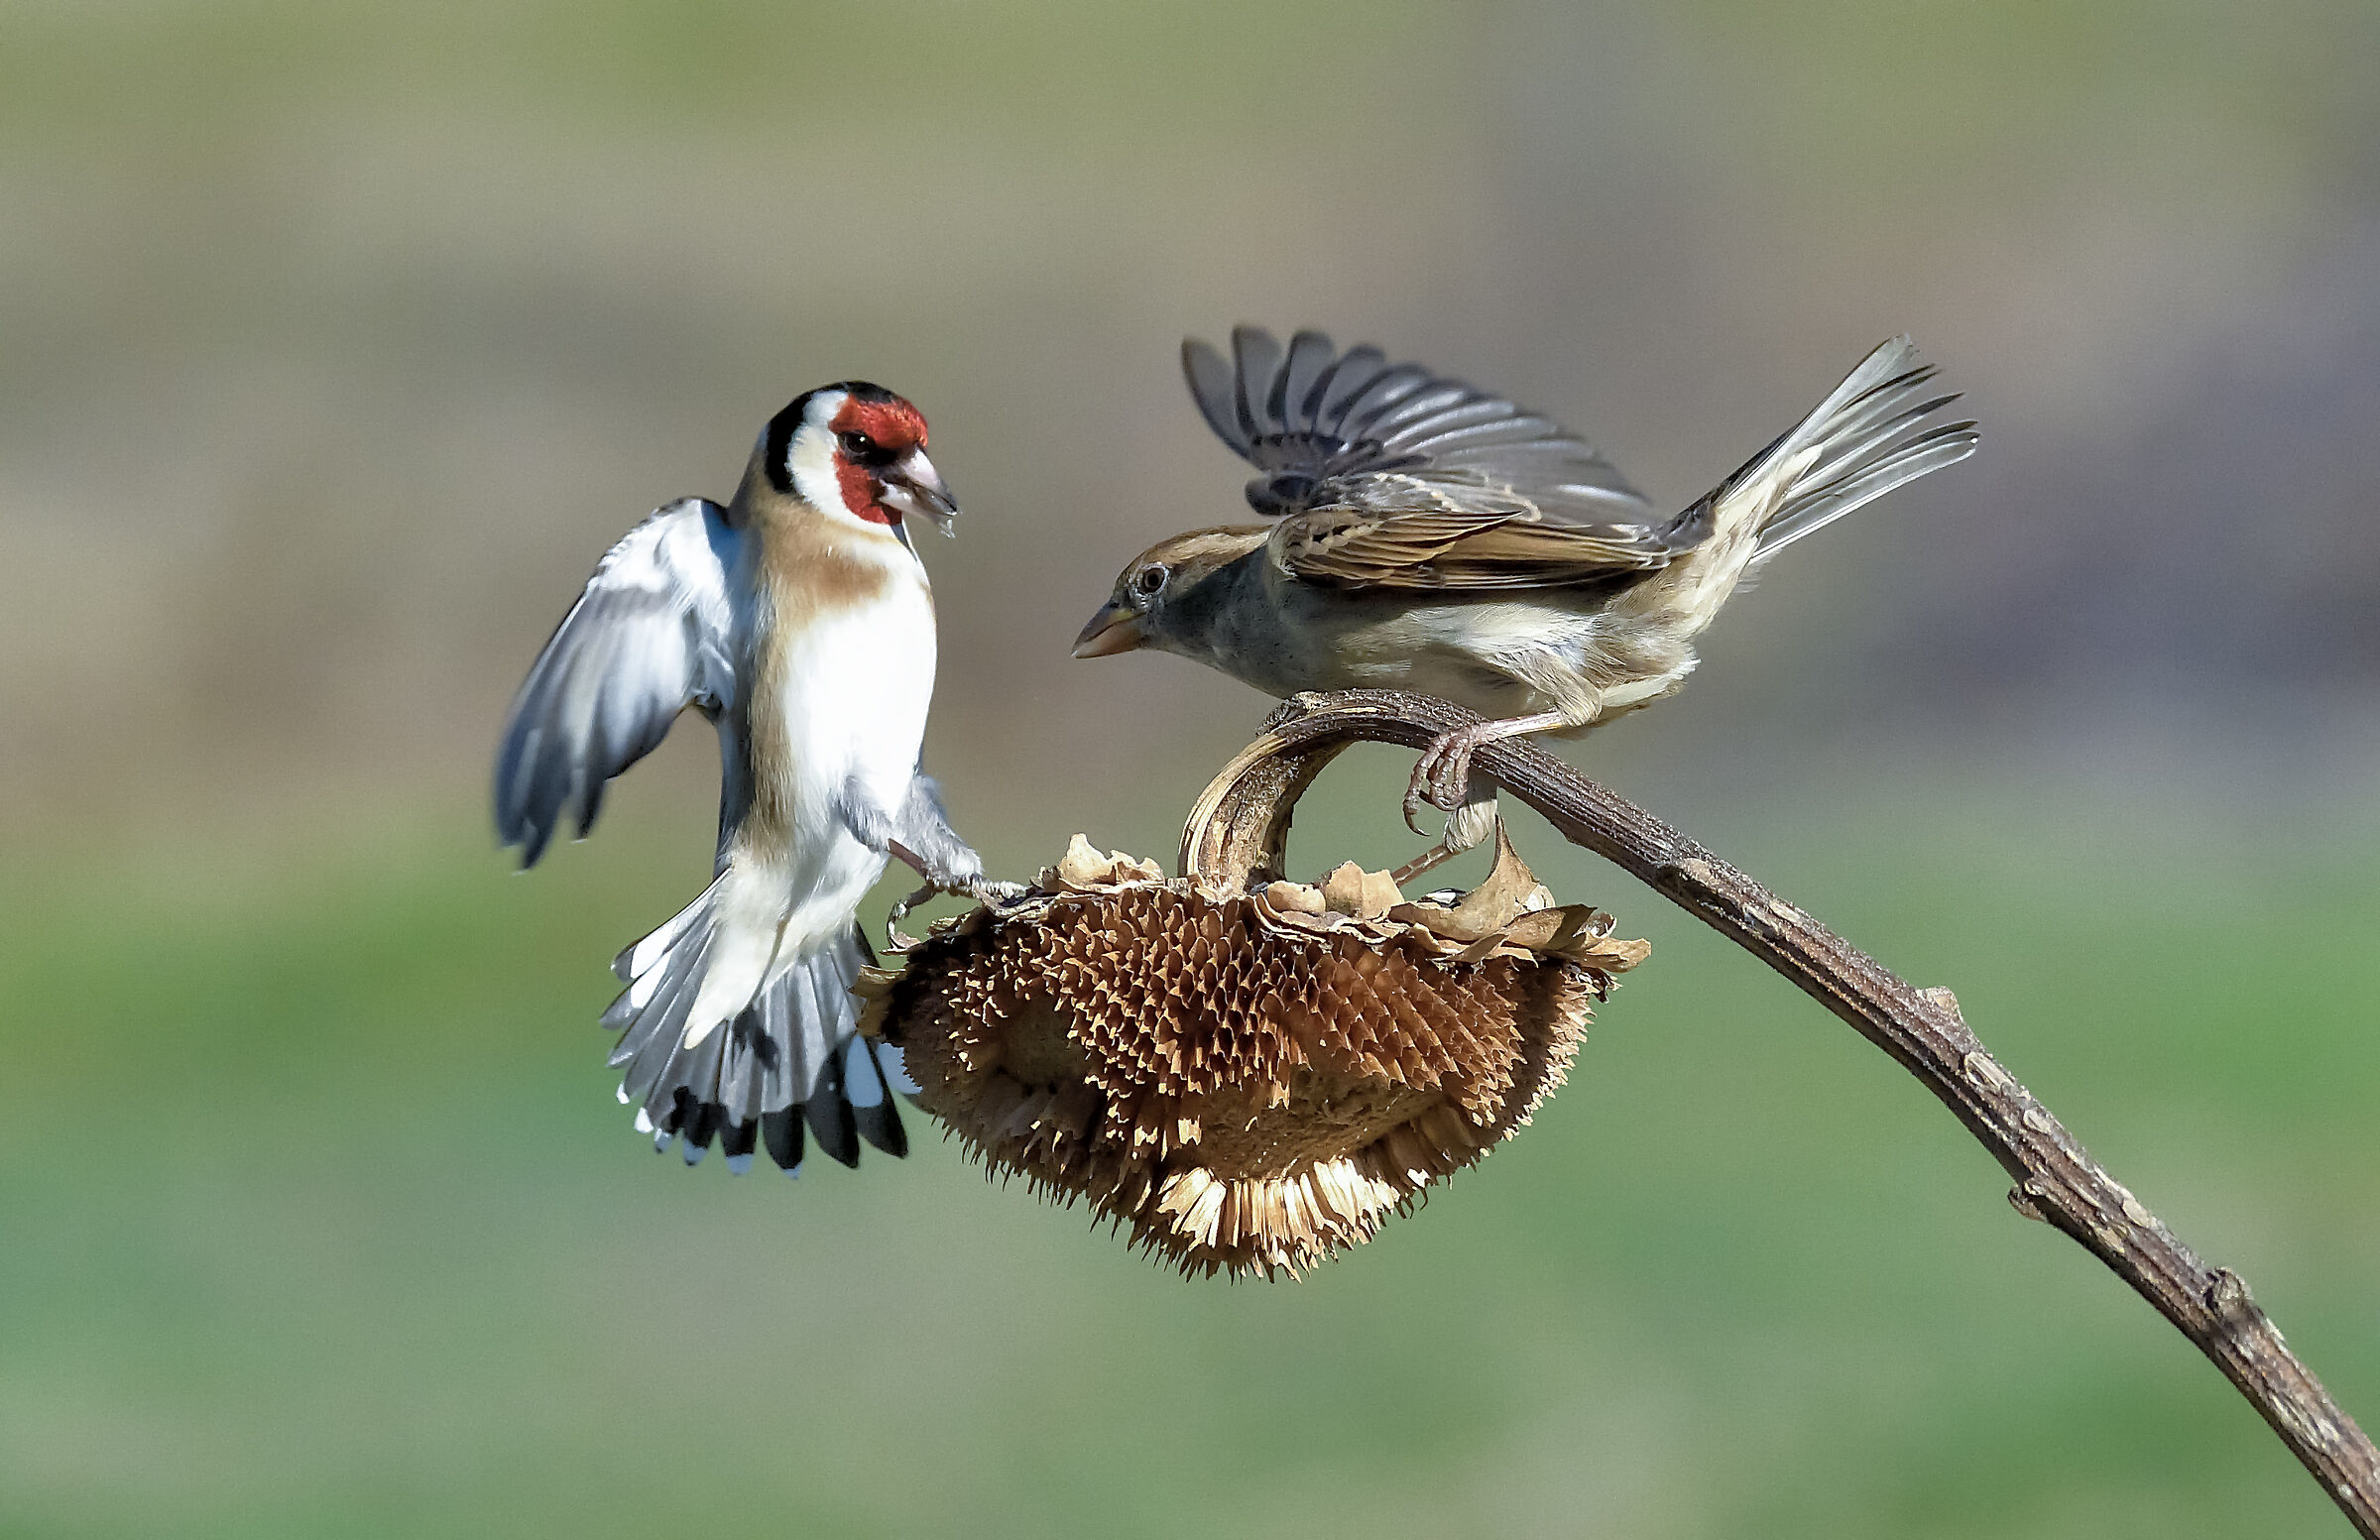 cardellino vs sparrow...